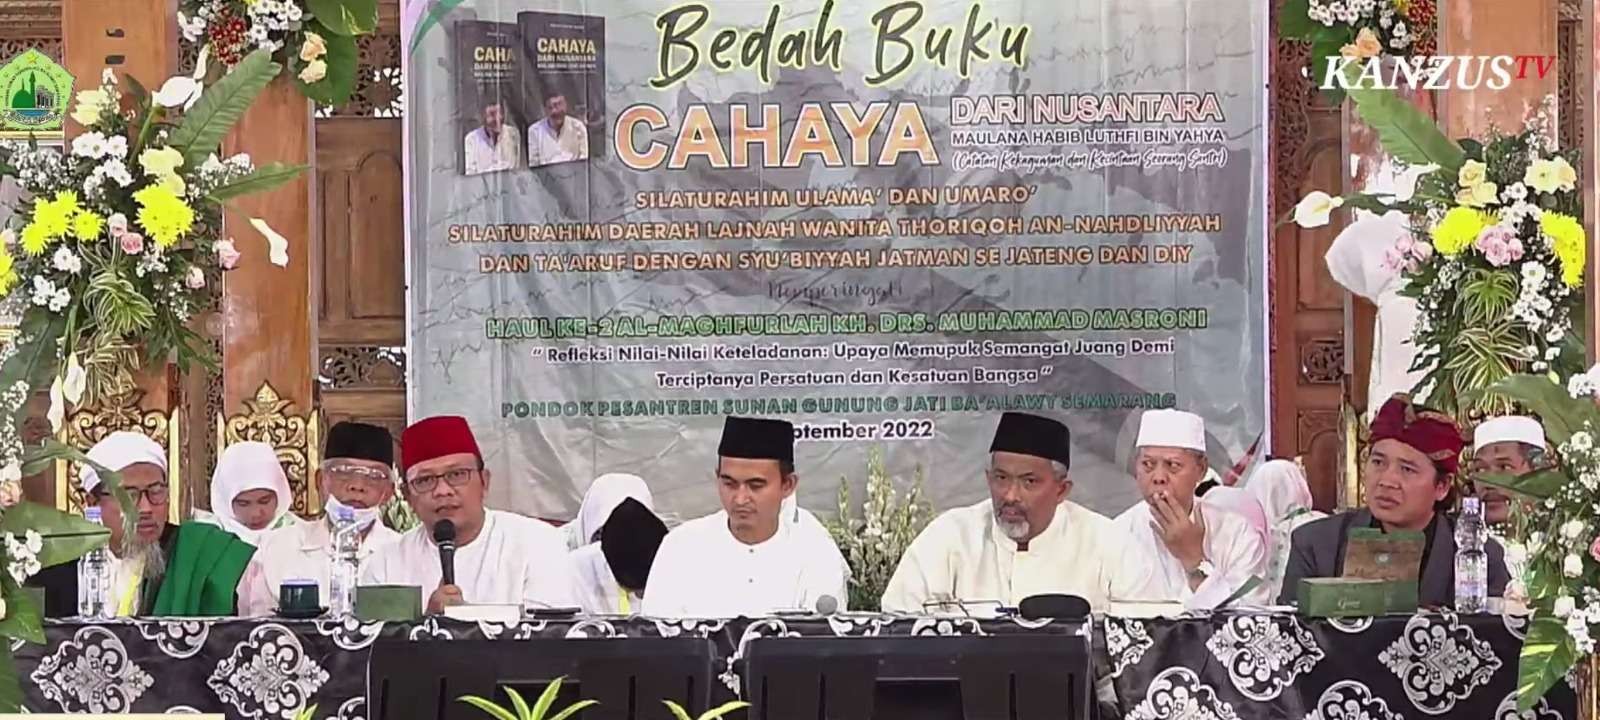 . Hasan Chabibie, pengurus LP Maarif PBNU, pada agenda bedah buku Cahaya dari Nusantara, pada Kamis (08 September 2022) di Semarang, Jawa Tengah. (Foto: humas matan)